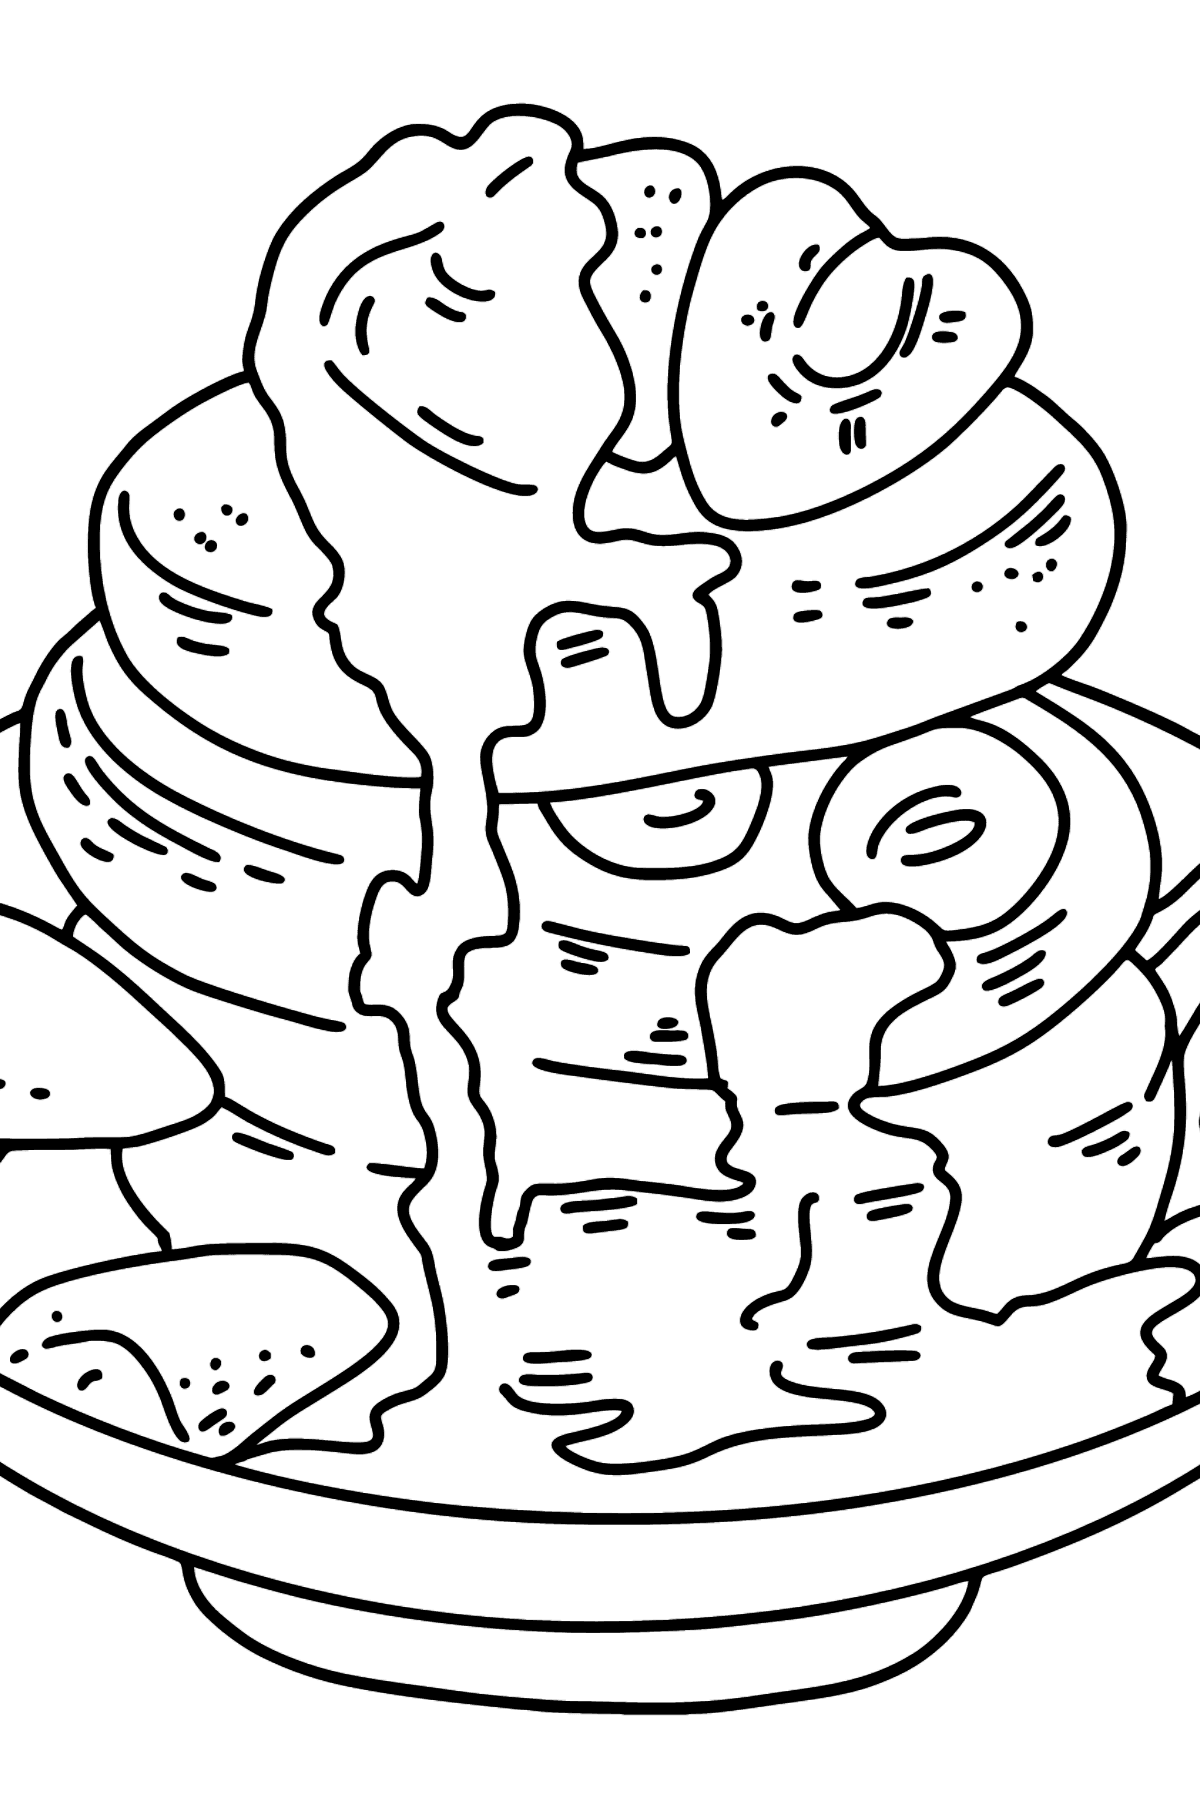 Tegning til fargelegging frokost - pannekaker med honning - Tegninger til fargelegging for barn